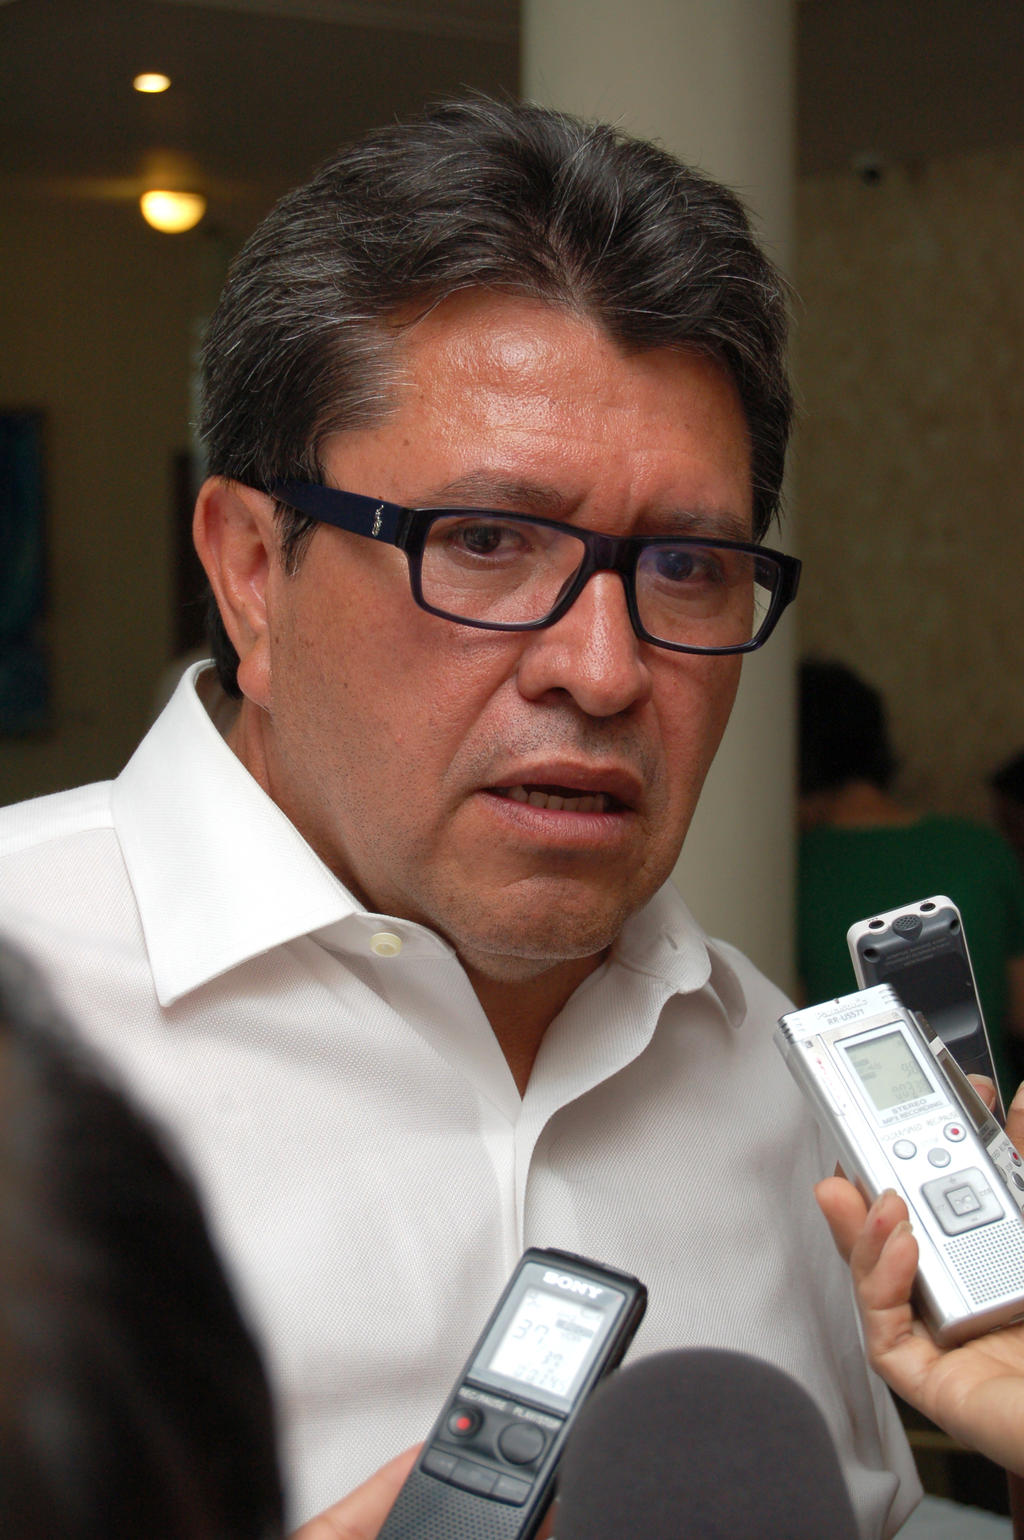 El PRD presentó la grabación de una conversación telefónica en la que Ricardo Monreal, de Morena, pide contratos simulados para publicidad.